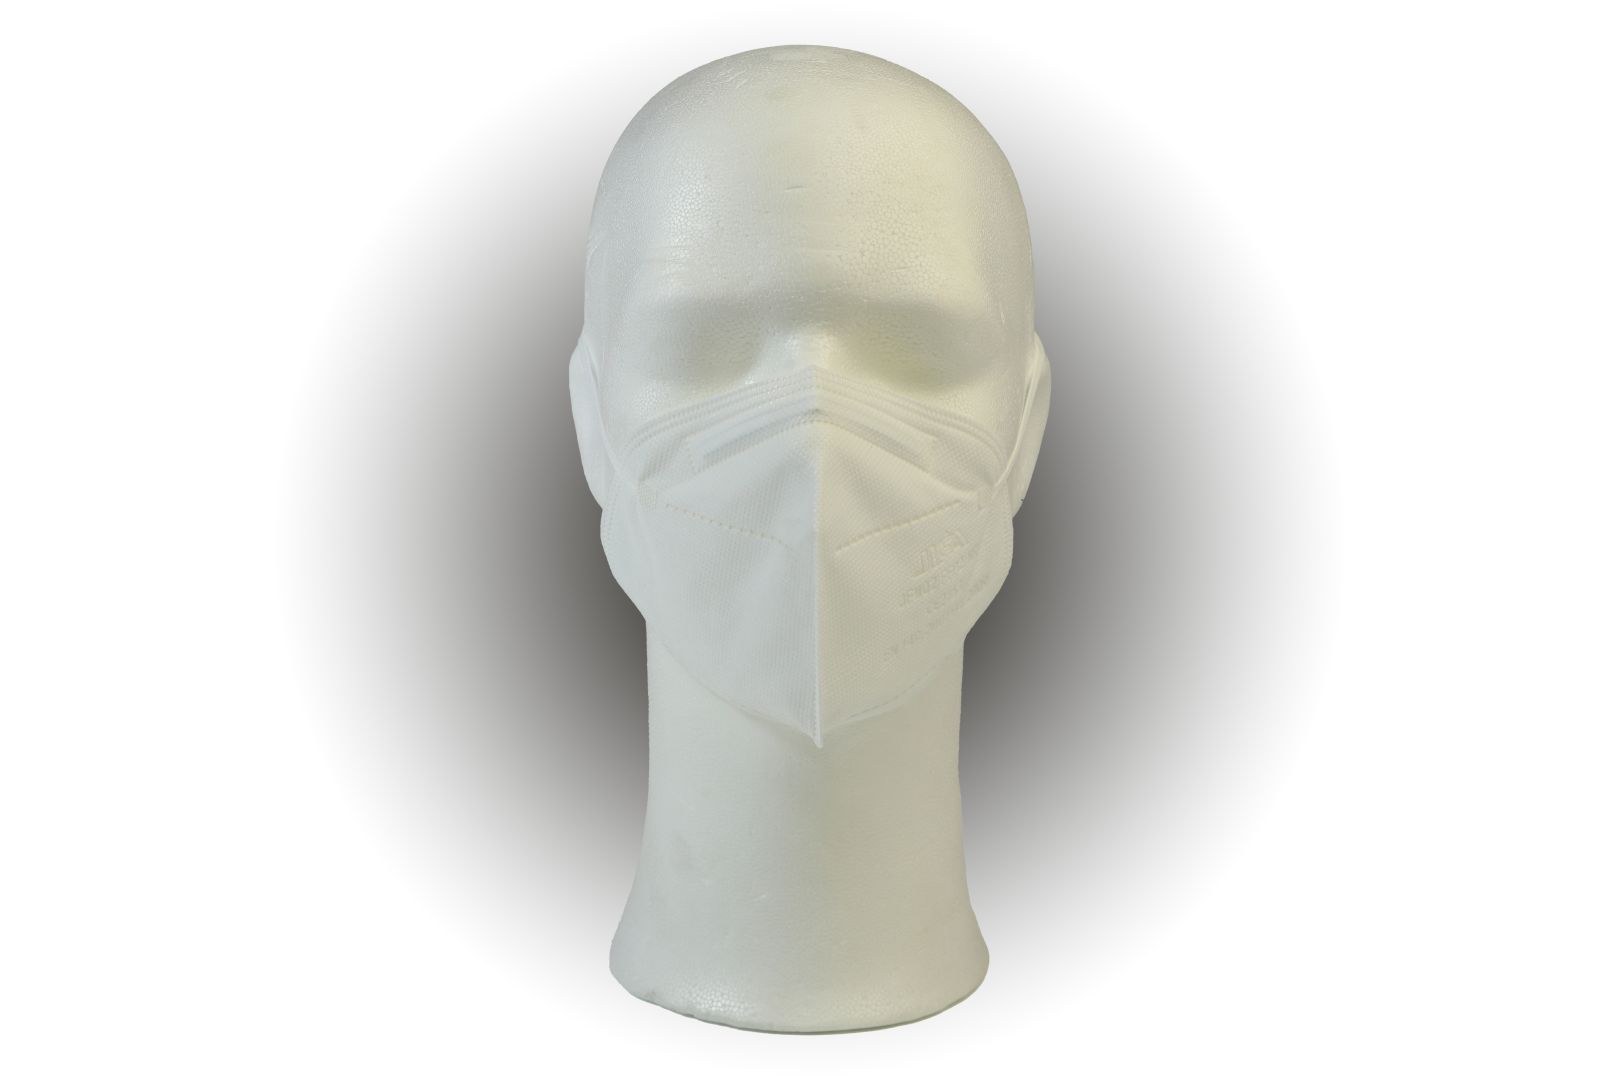 Feinstaub Schutzmaske FFP2, NR faltbar, geprüft und CE-zertifiziert, 6-er Pack